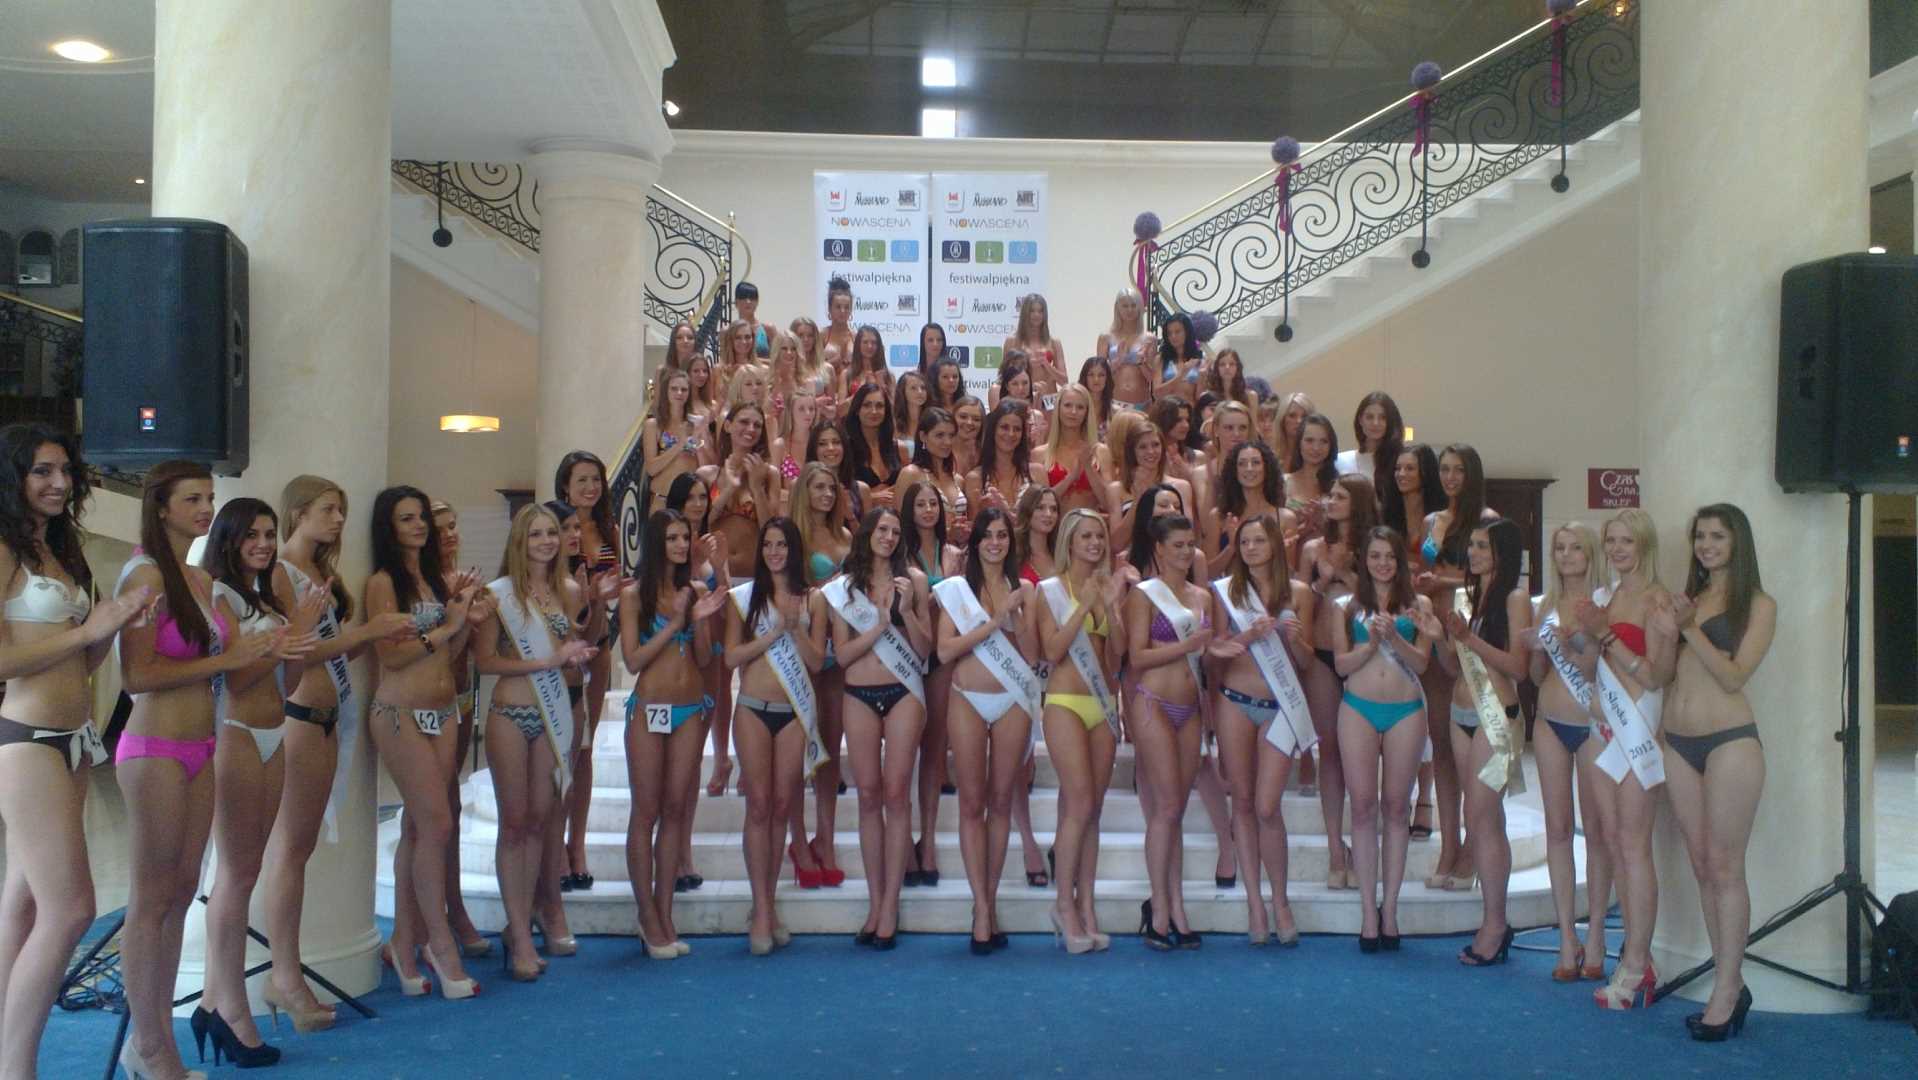 , Miss Warmii i Mazur 2012 w ćwierćfinale Miss Polski, Miss Warmii i Mazur